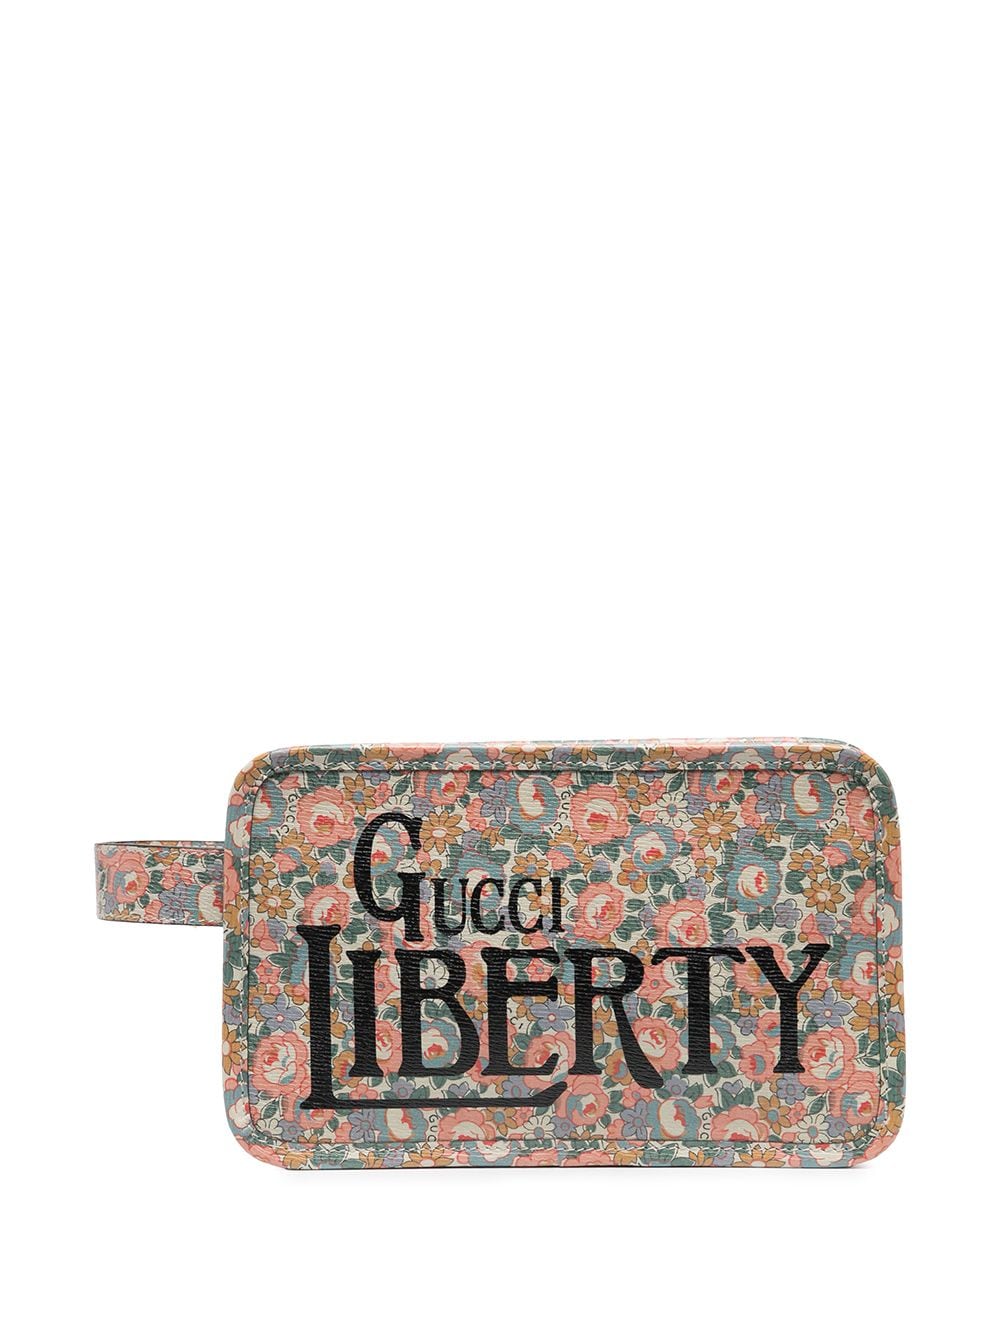 фото Gucci несессер gucci liberty с цветочным принтом